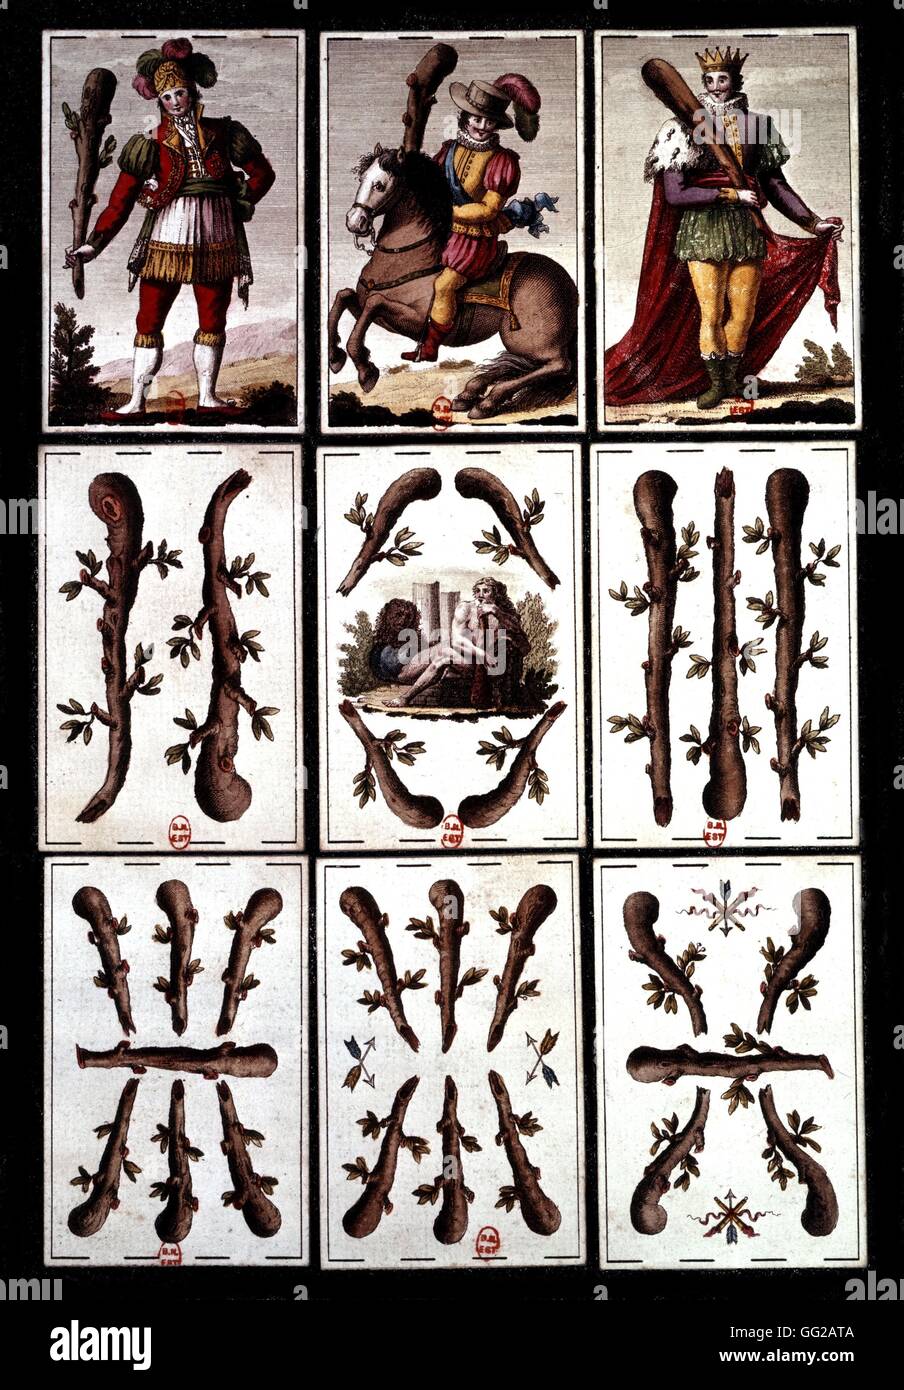 Brettspiel, bekannt als "Jeu de l'aluette', gestochen von José Martiny de Castro für Joseph Bonaparte des 19. Jahrhunderts in Paris. Bibliothèque De La Sorbonne Stockfoto